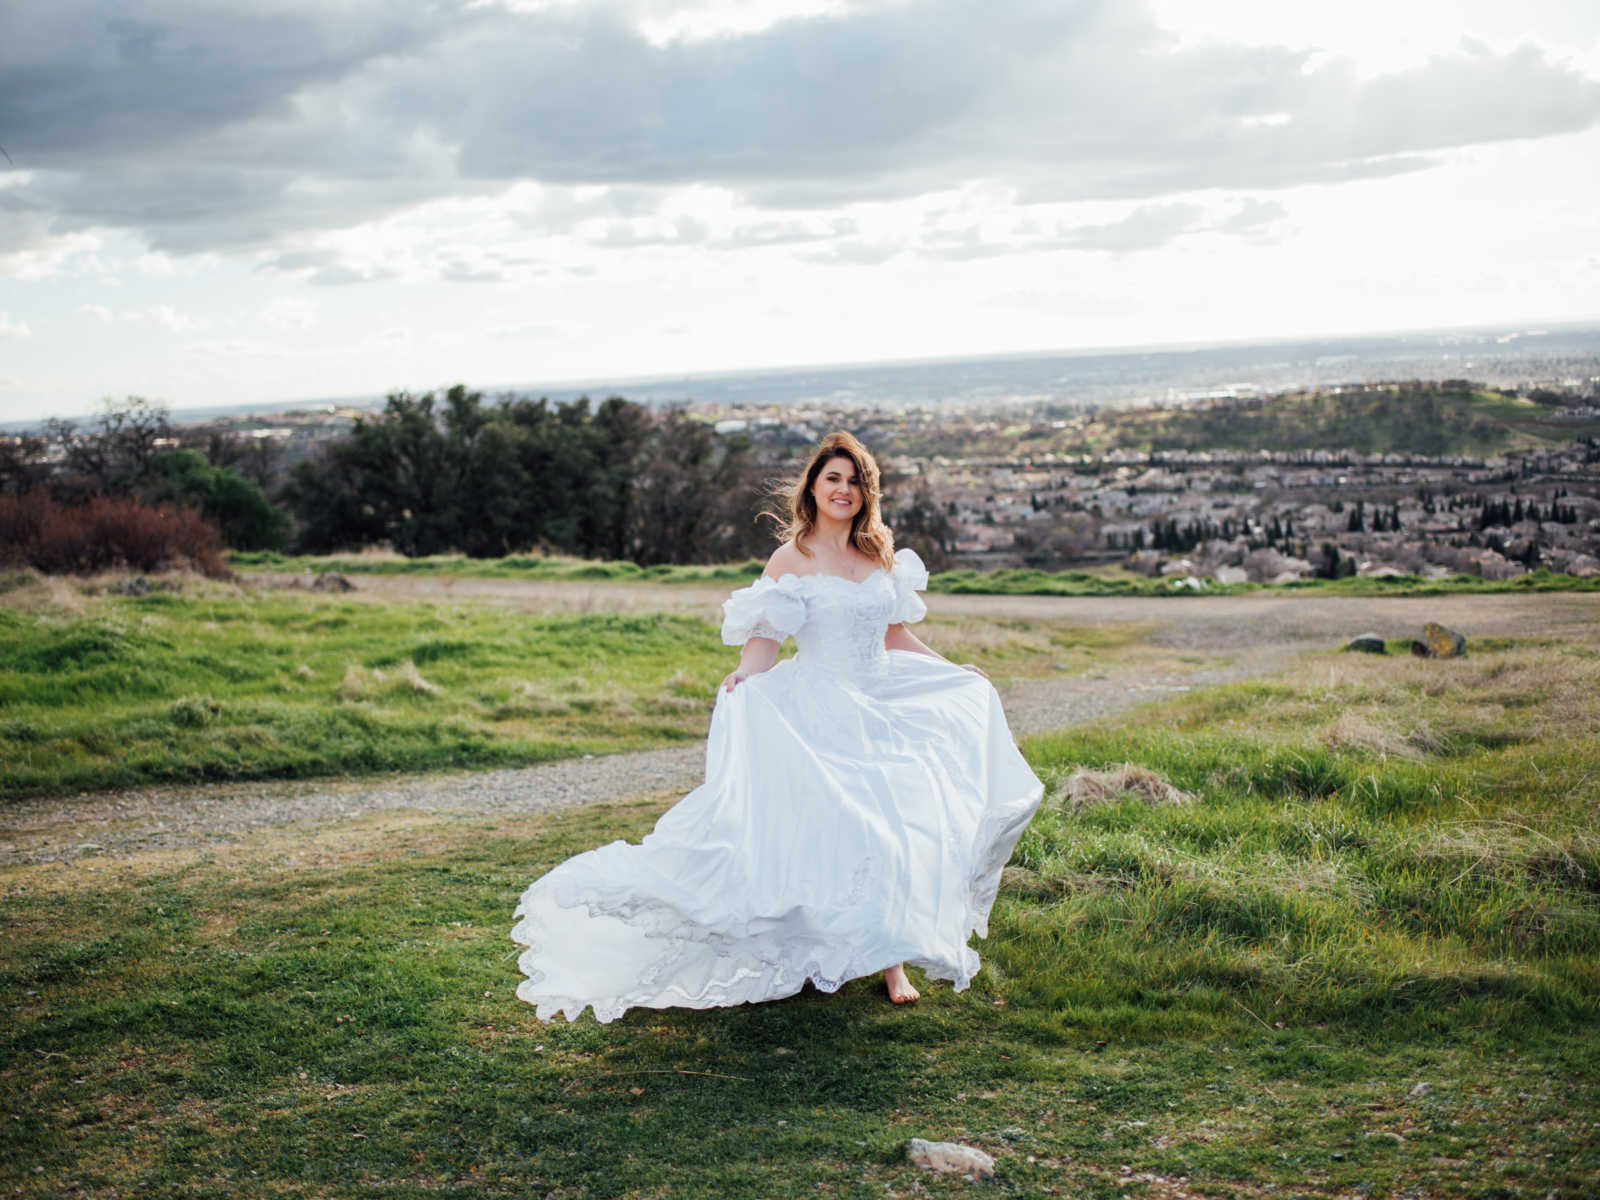 Bride stands in field wearing deceased mother's wedding gown